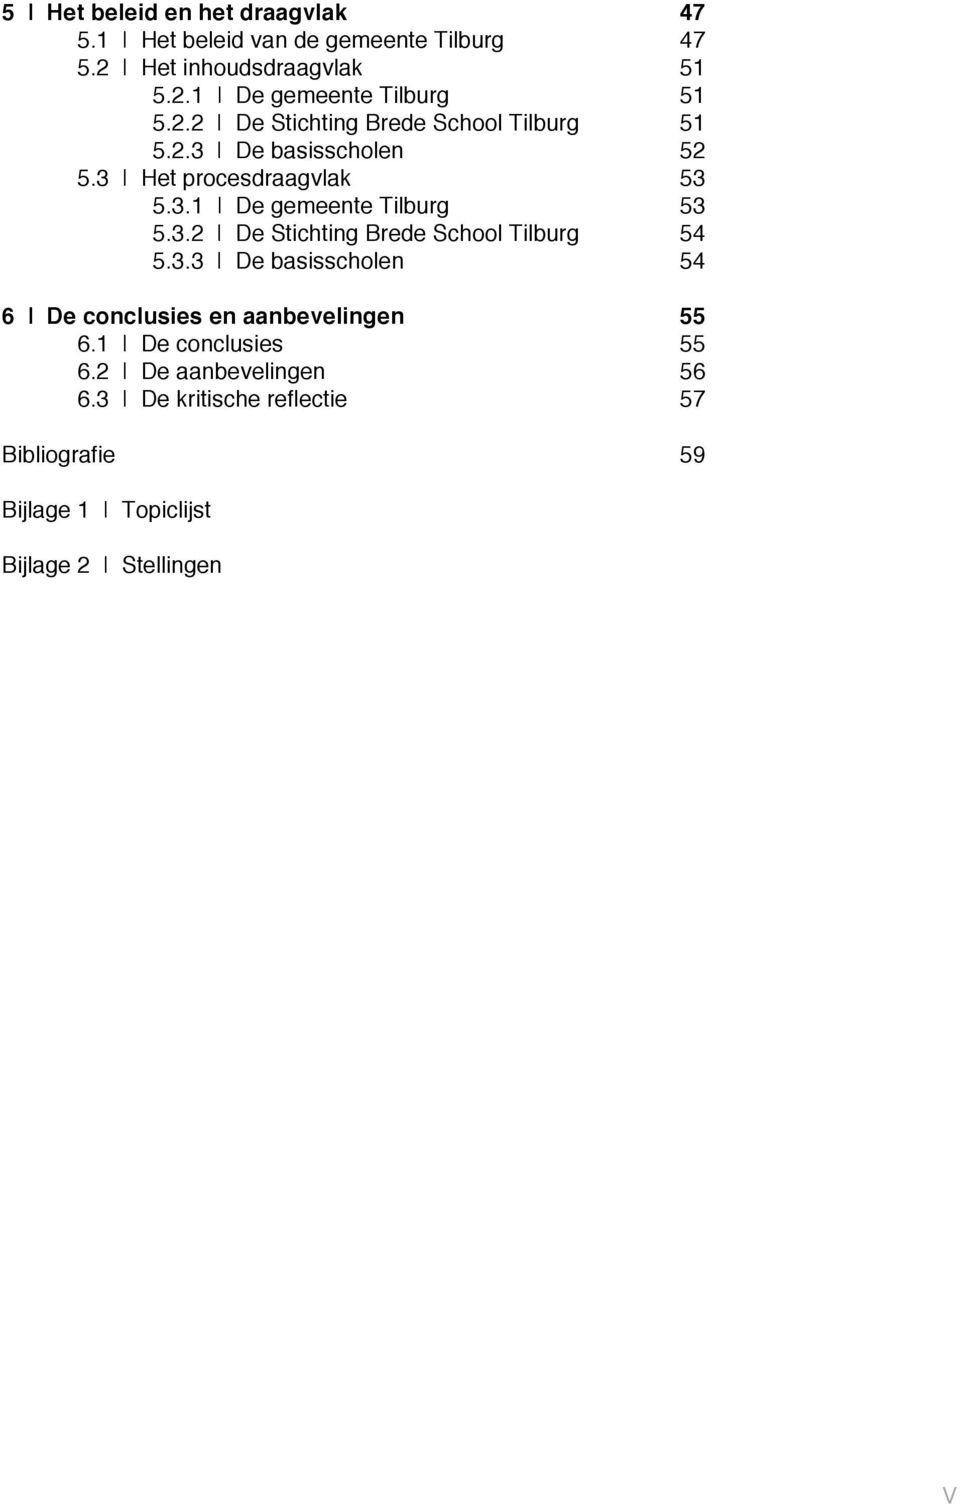 3.2 De Stichting Brede School Tilburg 54 5.3.3 De basisscholen 54 6 De conclusies en aanbevelingen 55 6.